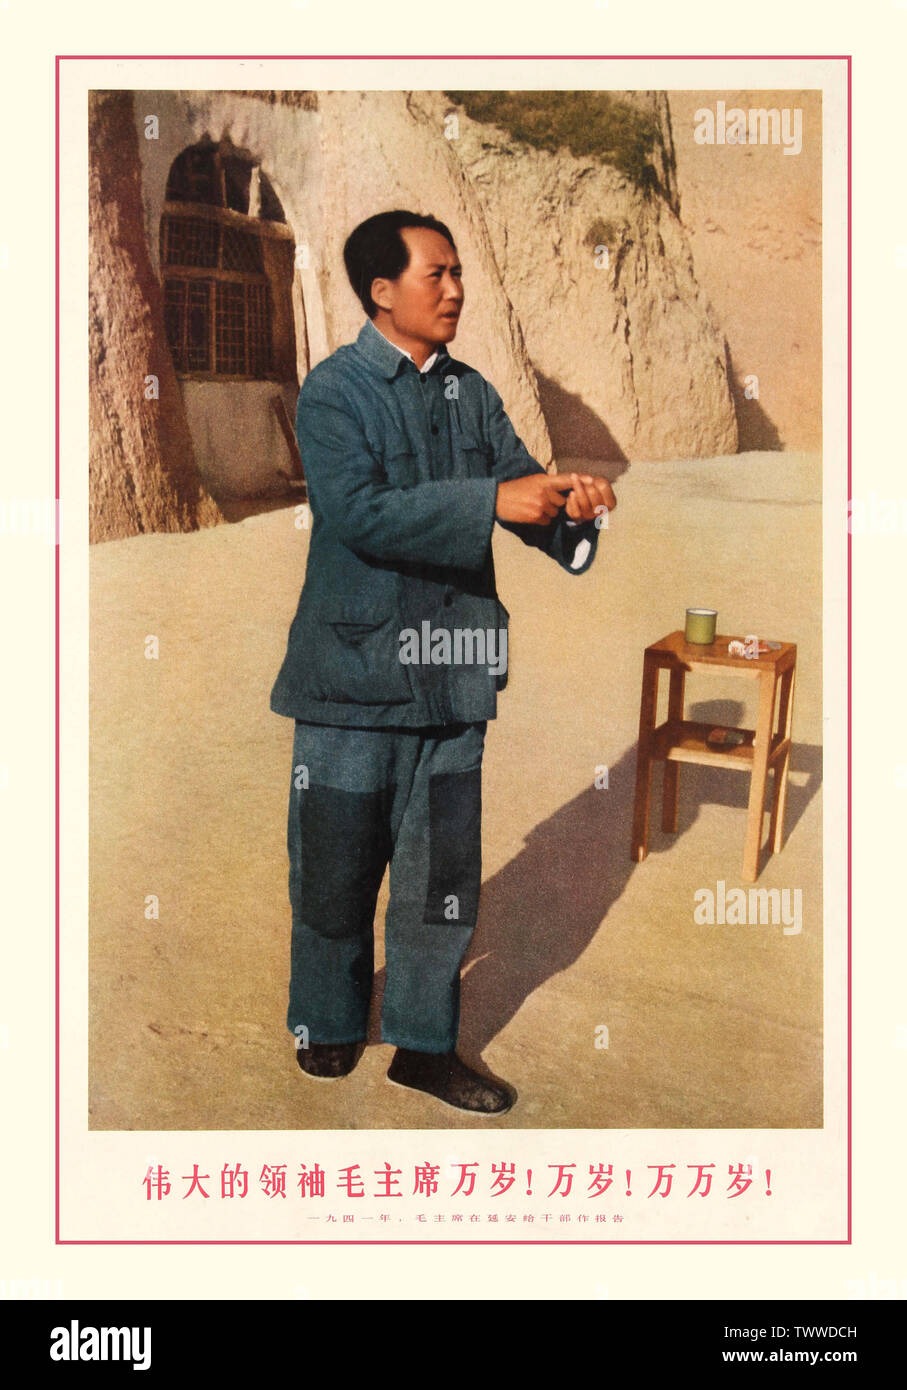 1960 der Vorsitzende Mao Vintage chinesische Propaganda Poster 1969 veröffentlicht mit einem Foto von einem jungen Mao Zedong, liefern einen Bericht zu Kadern in Yan'an, 1941. China, 1969 Mao Zedong (Dezember 26, 1893 - 9. September 1976), auch als Chairman Mao bekannt, eine chinesische Kommunistische Revolutionäre war, den Gründervater der Volksrepublik China ist, die er als Vorsitzender der Kommunistischen Partei Chinas von der Gründung 1949 bis zu seinem Tod 1976 regierte. Seine Theorien, militärische Strategien und politische Maßnahmen werden zusammenfassend als Maoismus bekannt. Stockfoto